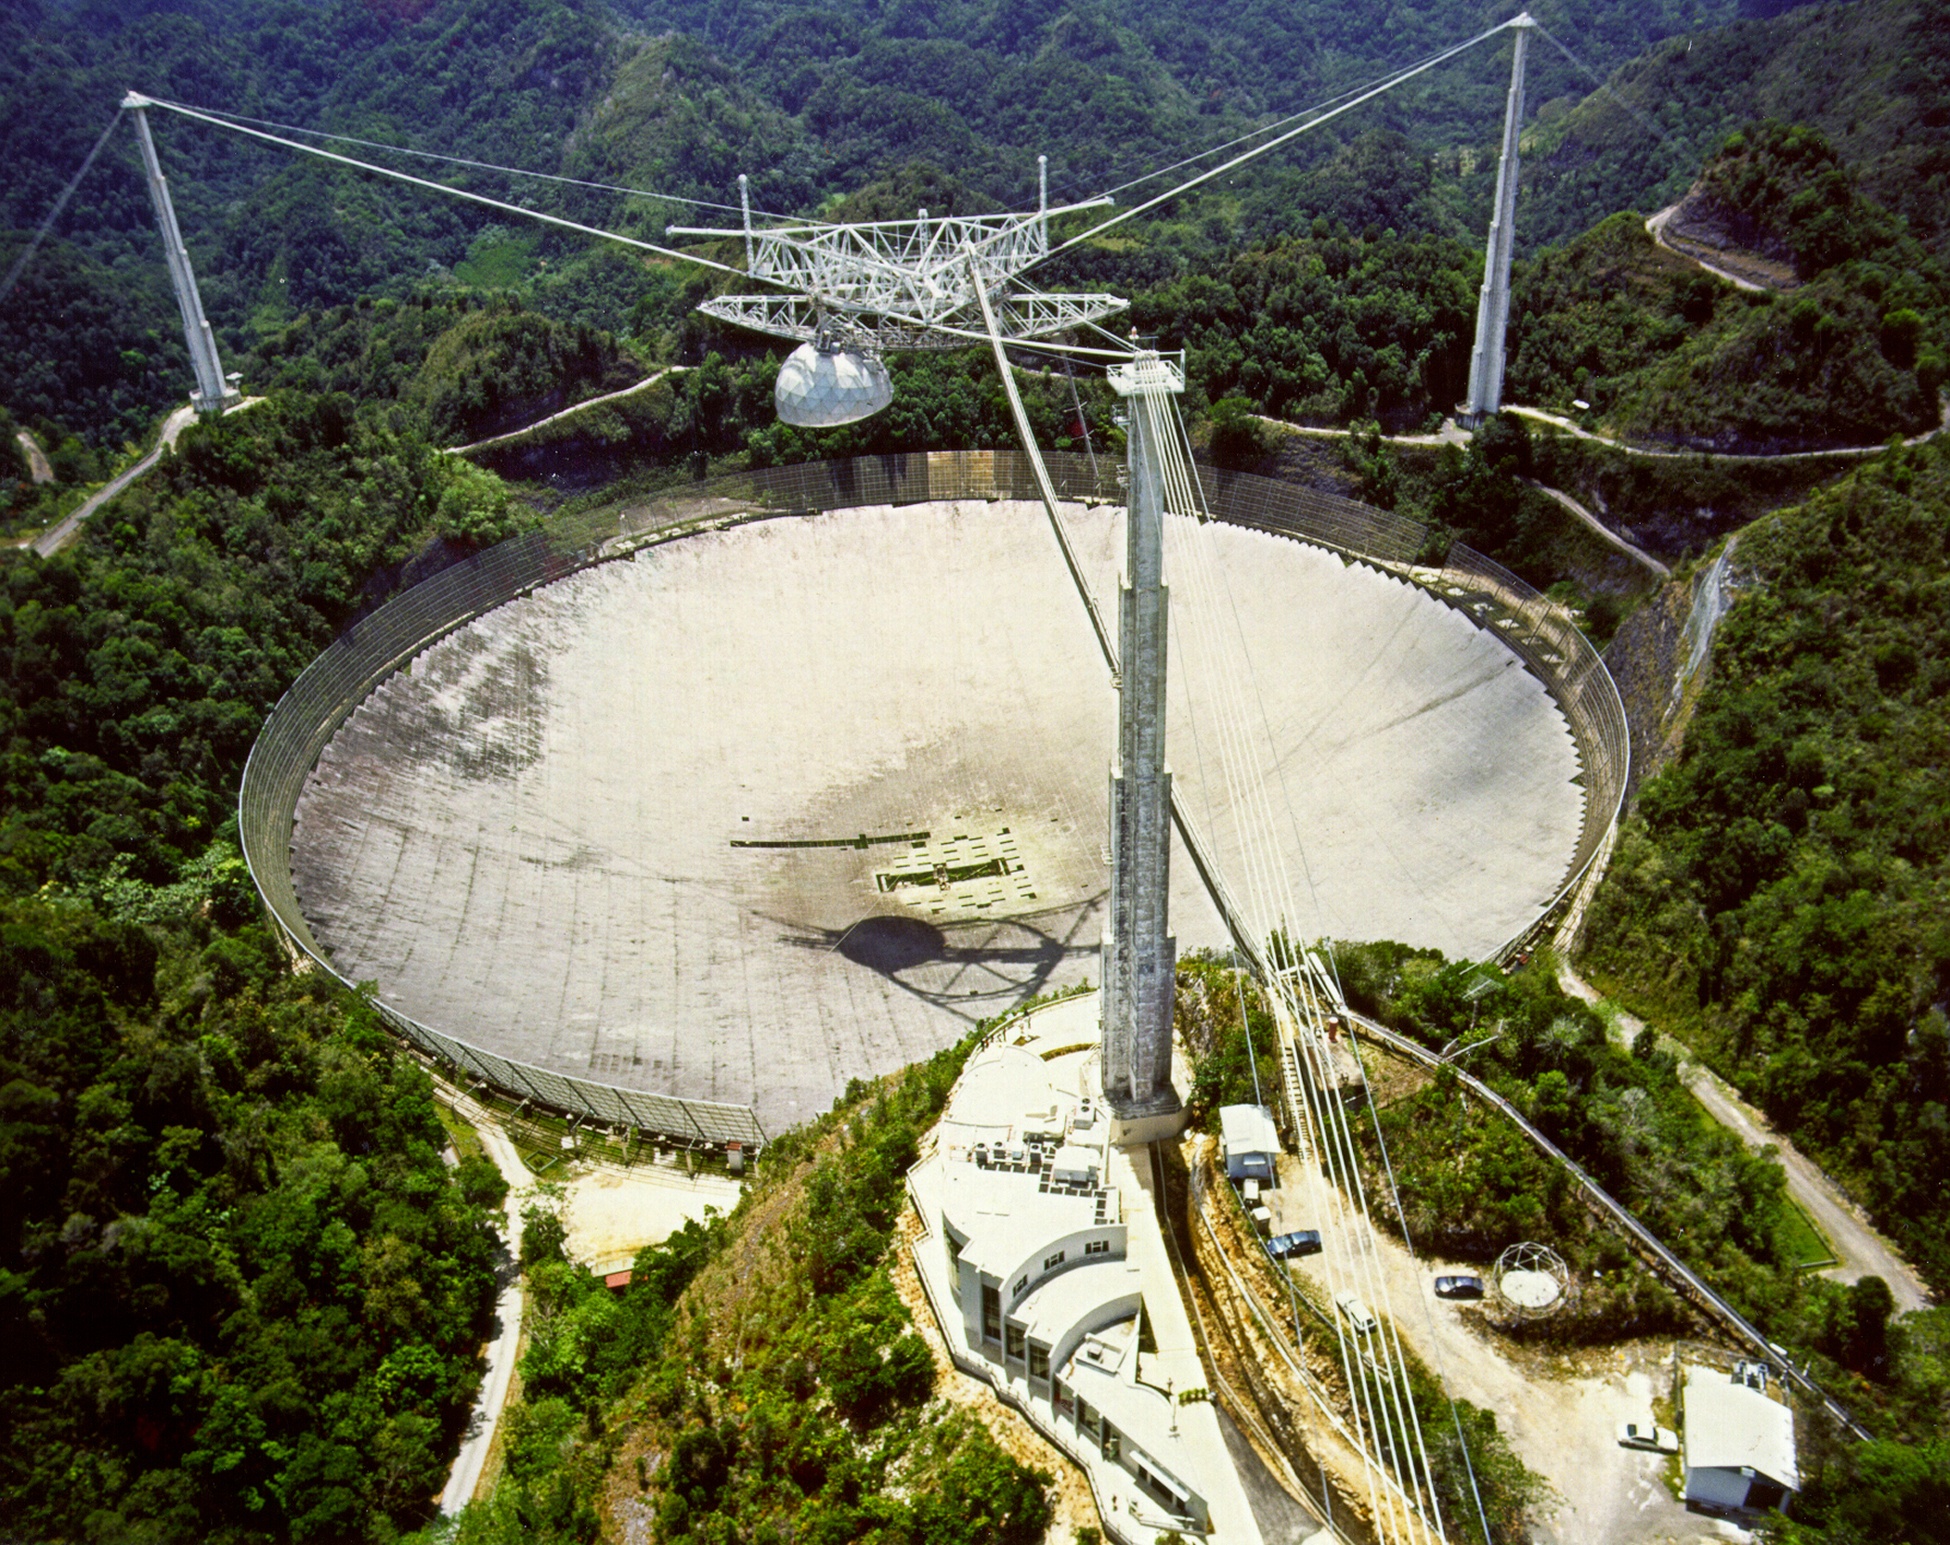 The 1,000-foot-diameter radio telescope at Arecibo, Puerto Rico.